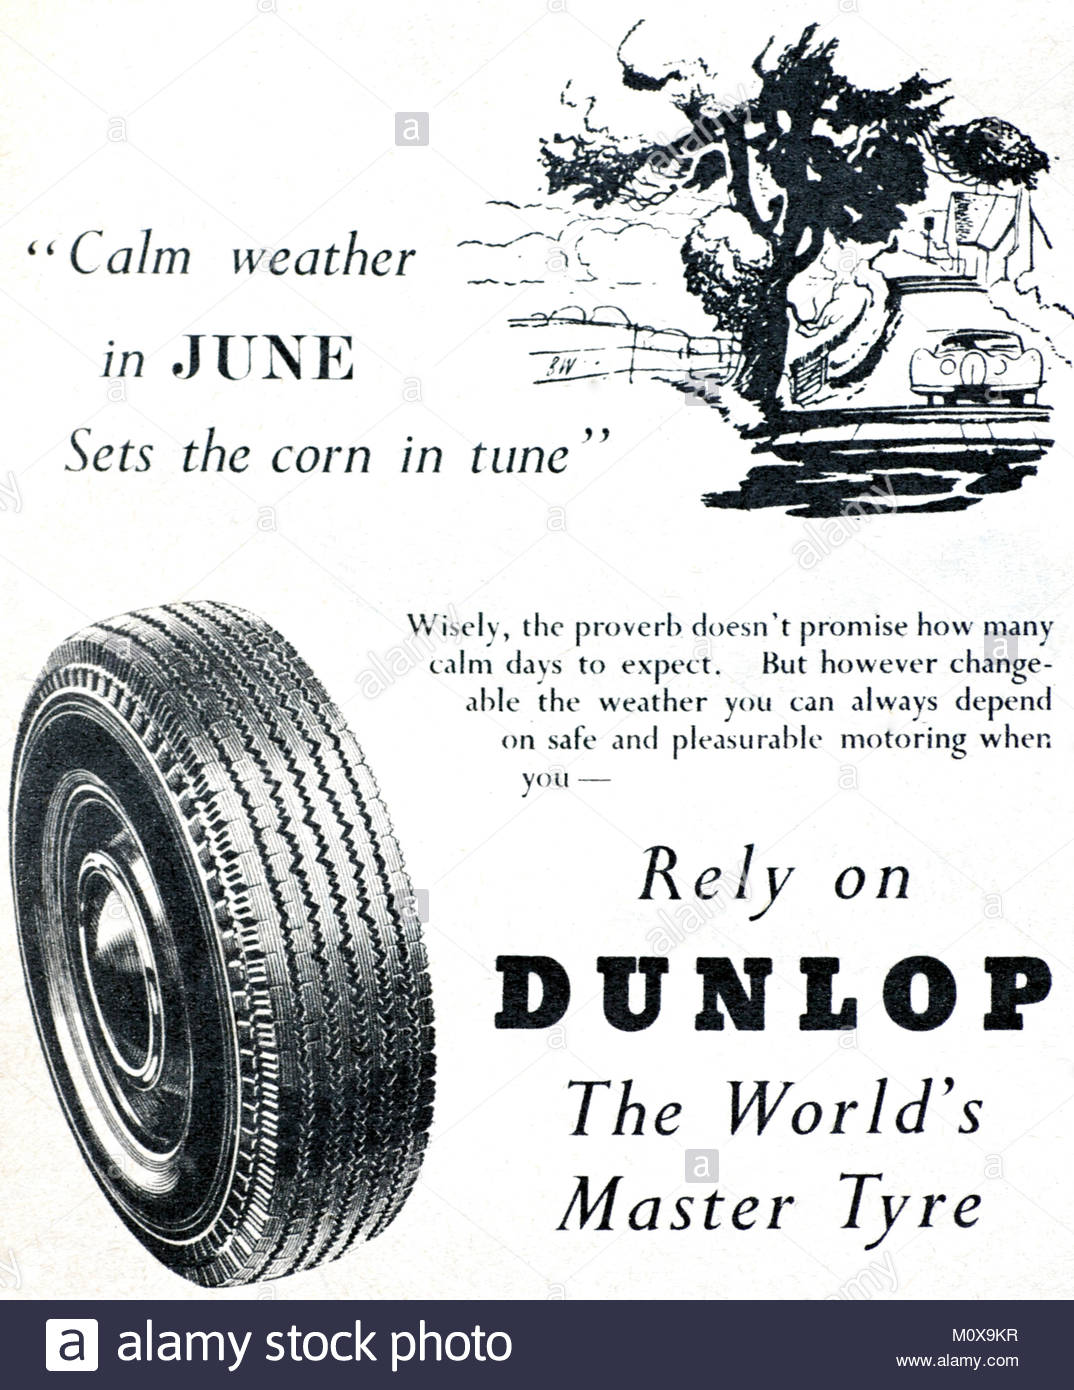 Pneumatici Dunlop vintage pubblicità 1950 Foto Stock